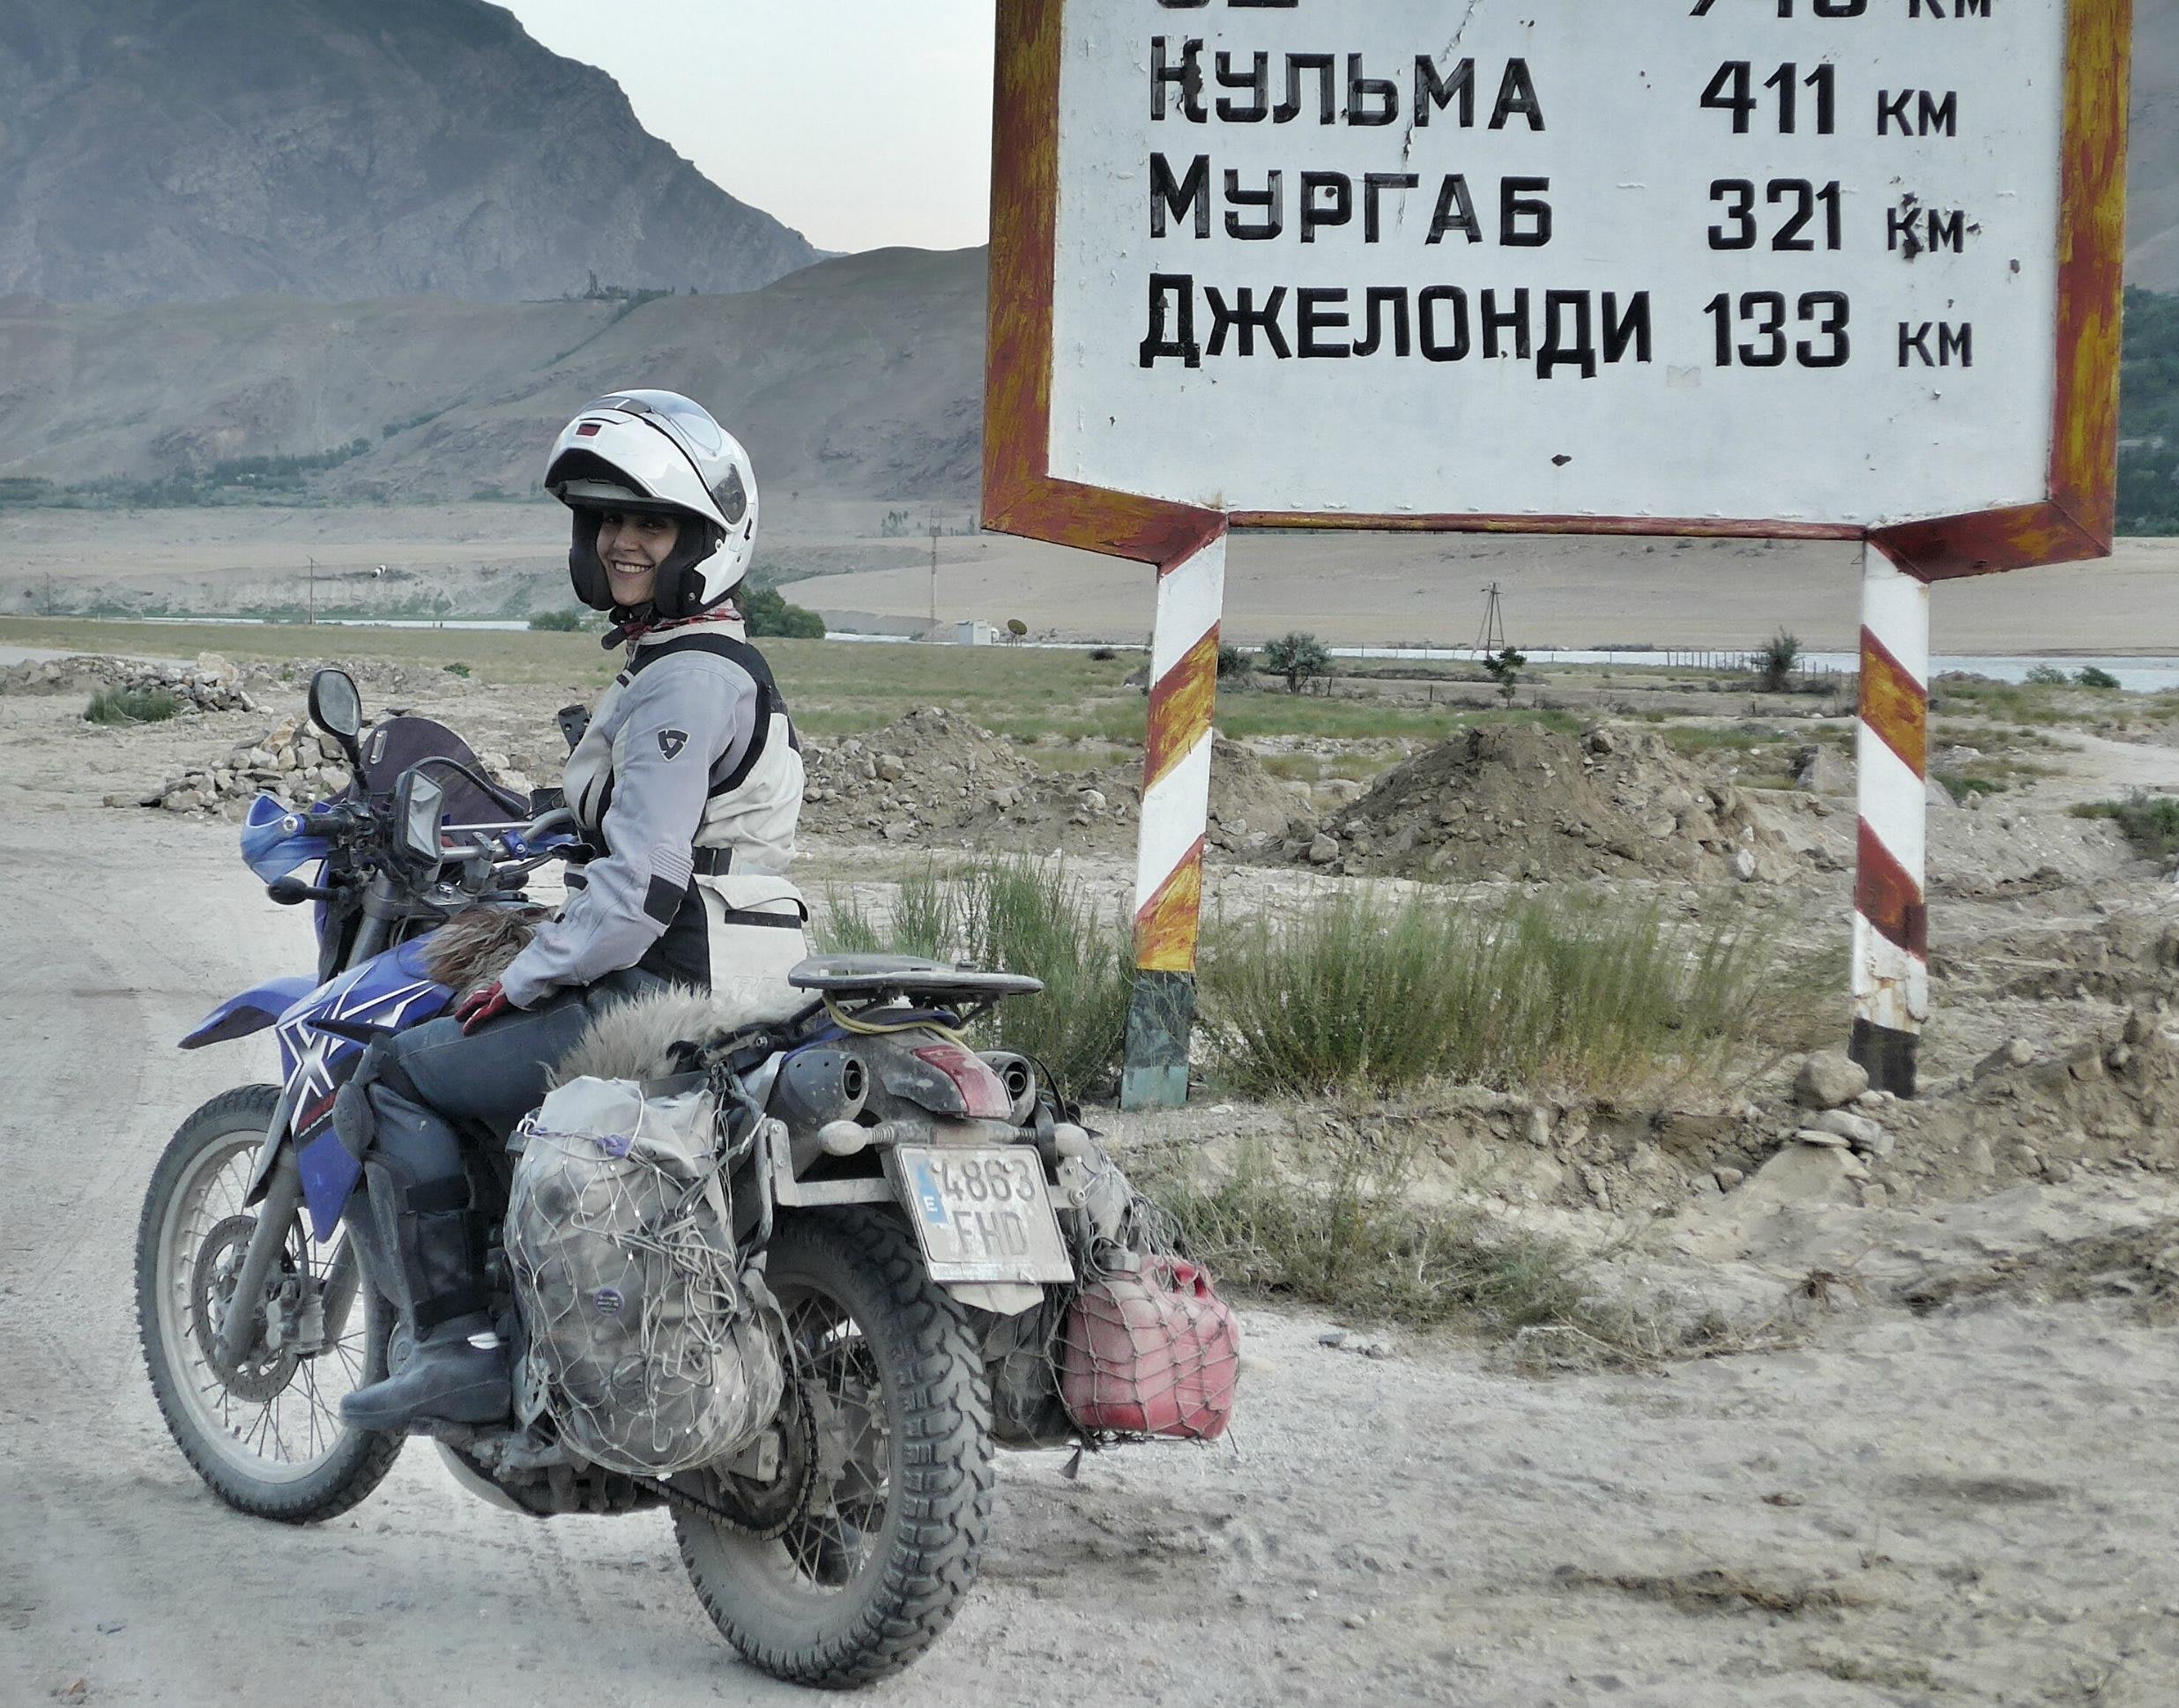 16 8 8 バイクで世界をひとり旅した女性ライダー Adventure